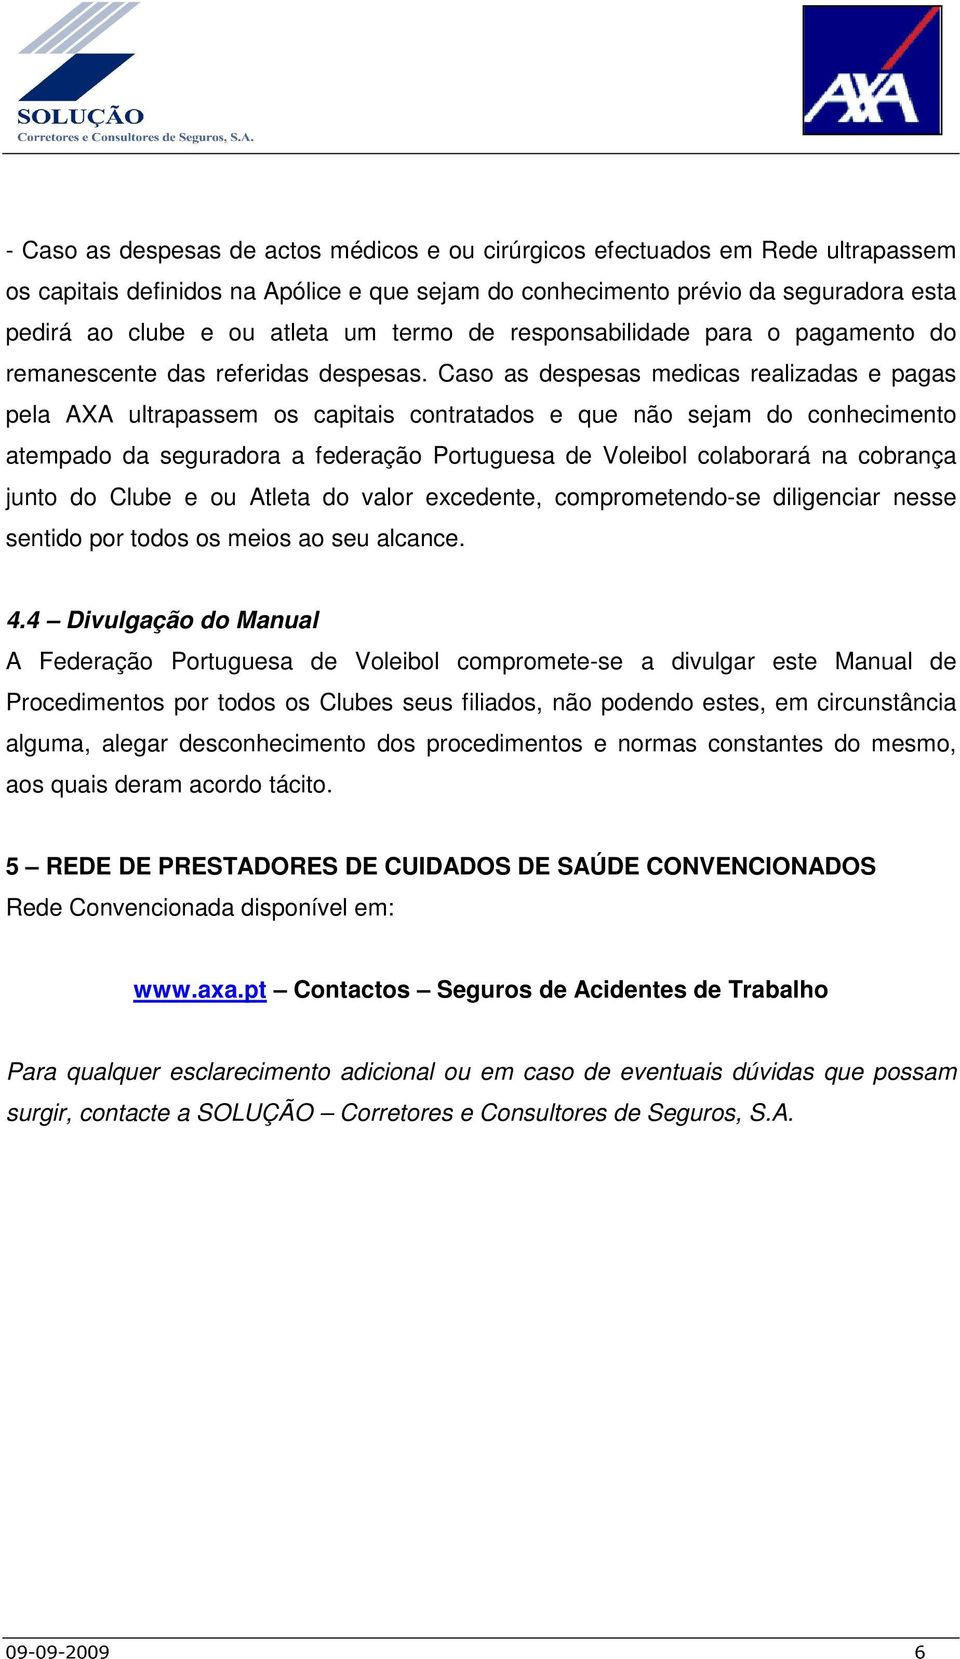 Caso as despesas medicas realizadas e pagas pela AXA ultrapassem os capitais contratados e que não sejam do conhecimento atempado da seguradora a federação Portuguesa de Voleibol colaborará na